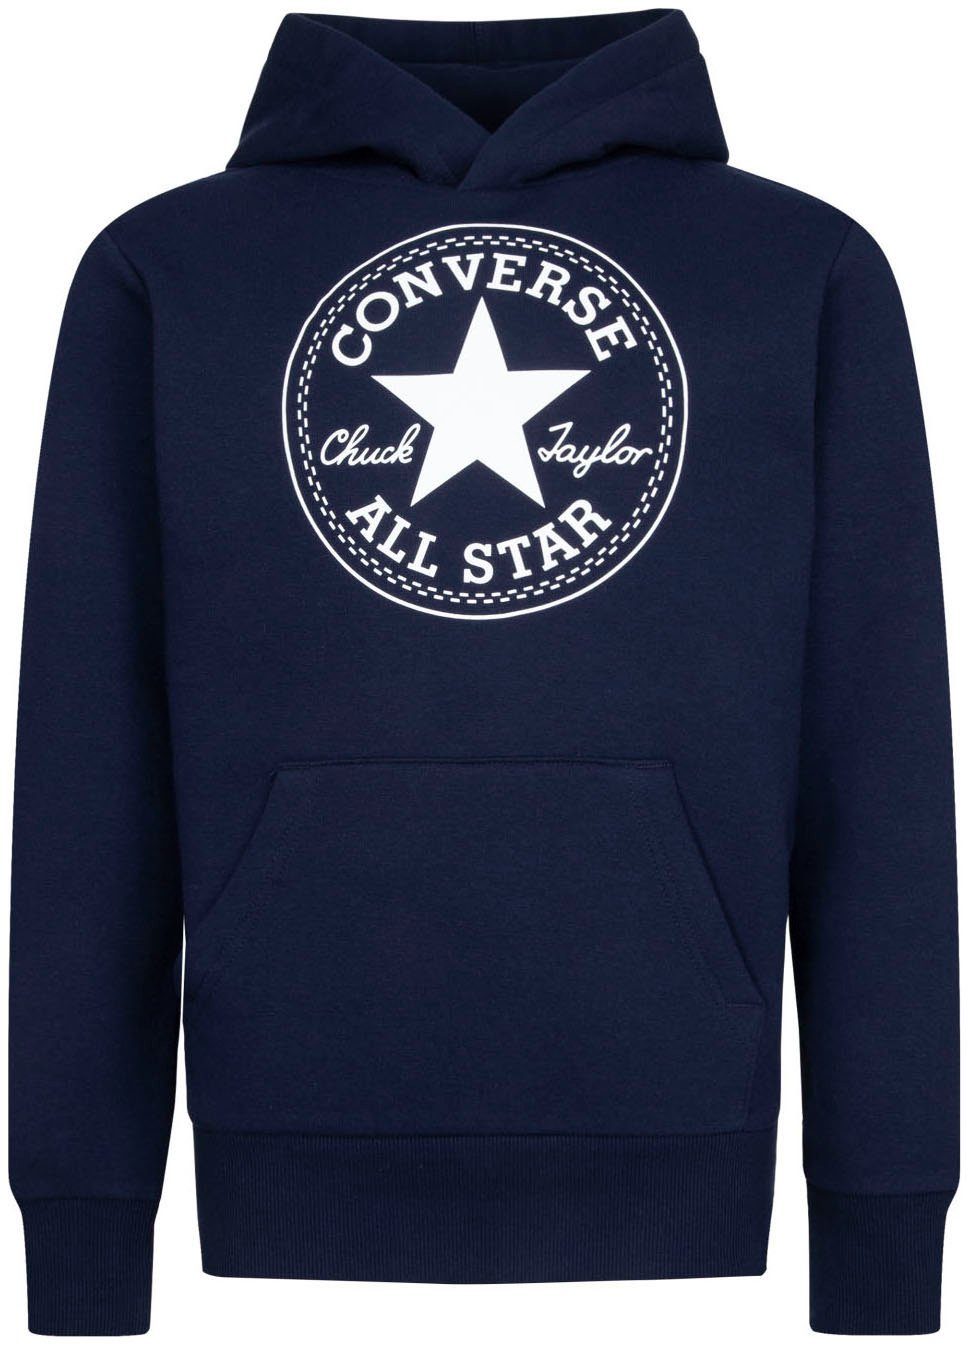 Converse Kapuzensweatshirt für Kinder, Converse Markenlabel auf der Brust